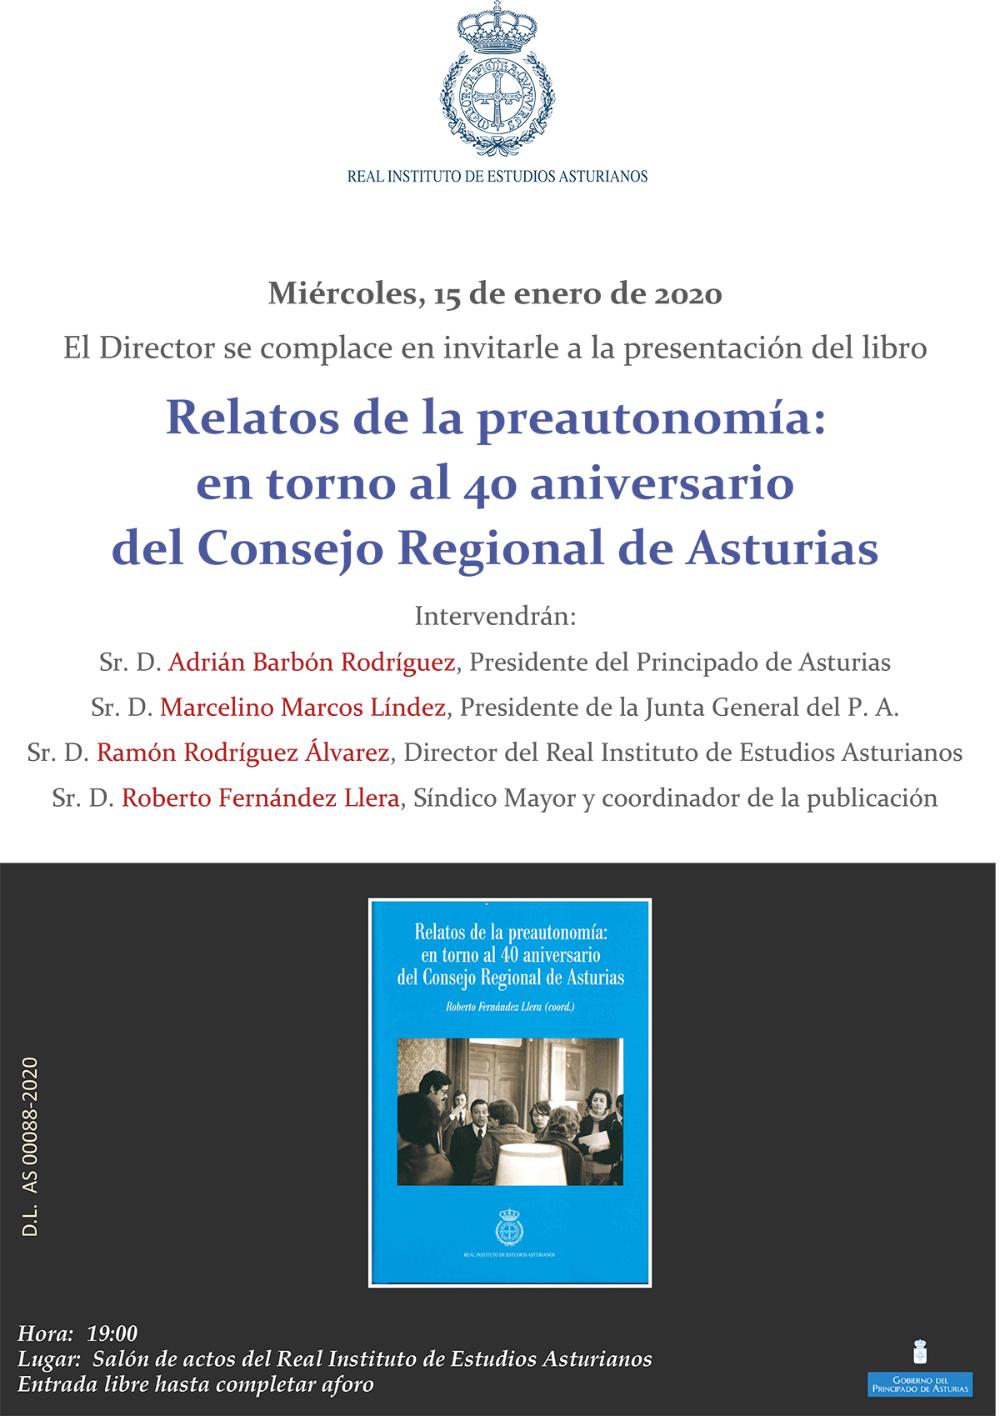 Imagen - Presentación del libro Relatos de la preautonomía: en torno al 40 aniversario del Consejo Regional de Asturias